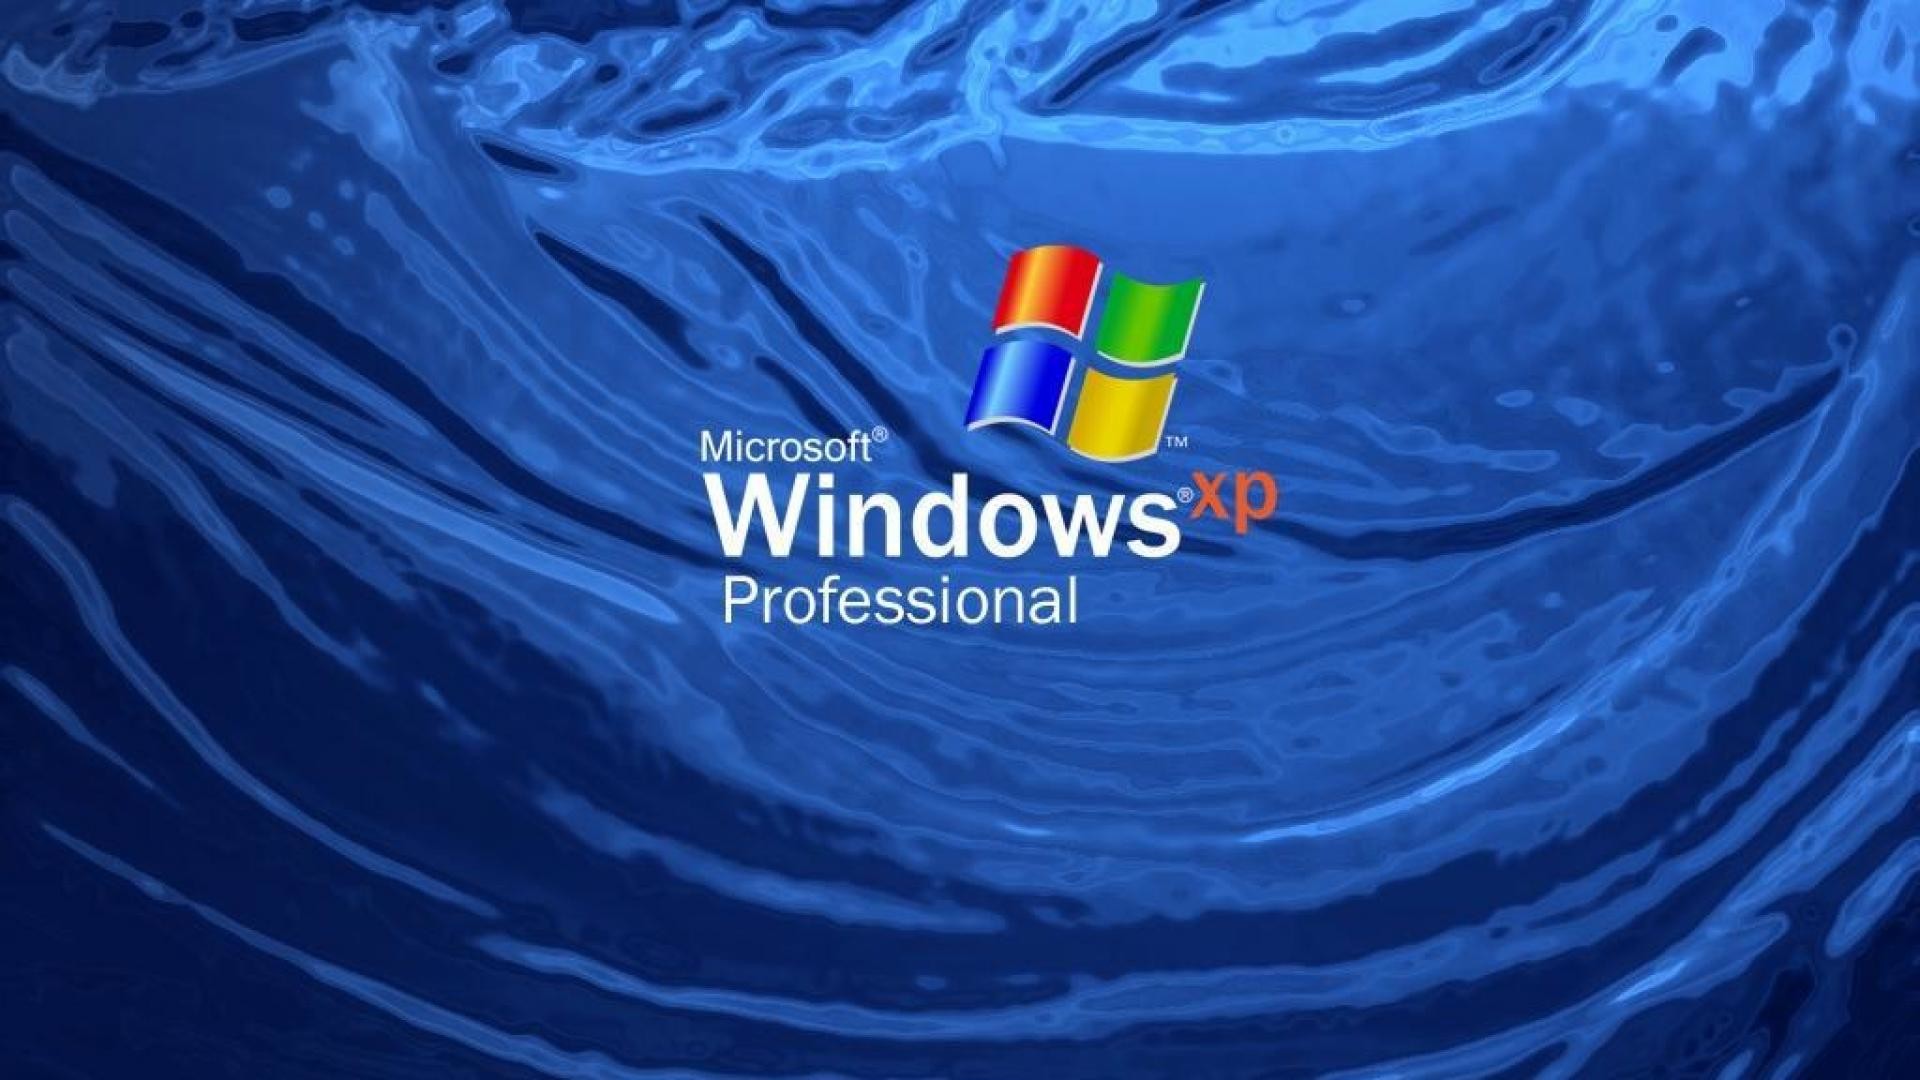 Windows 10 Windows XP Windows 7 Microsoft Microsoft Plus Minimalism  Wallpaper - Resolution:4500x3000 - ID:1185175 - wallha.com